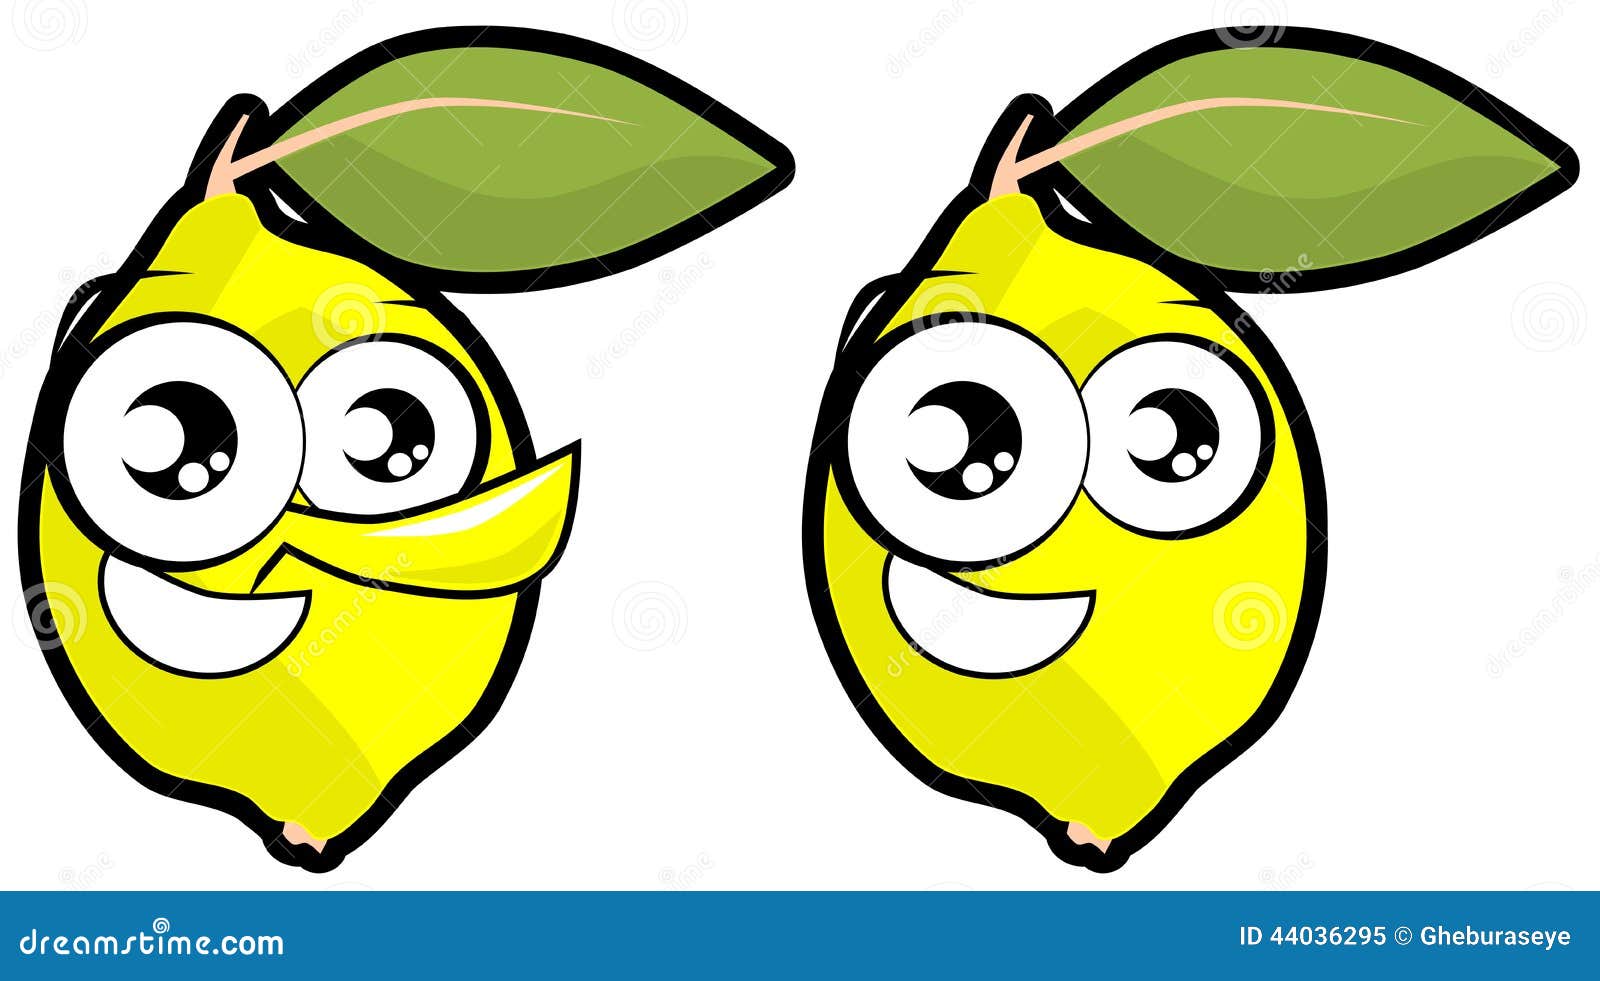 Cartoon Lemon Isolated Illustration Stock Illustration - Illustration ...